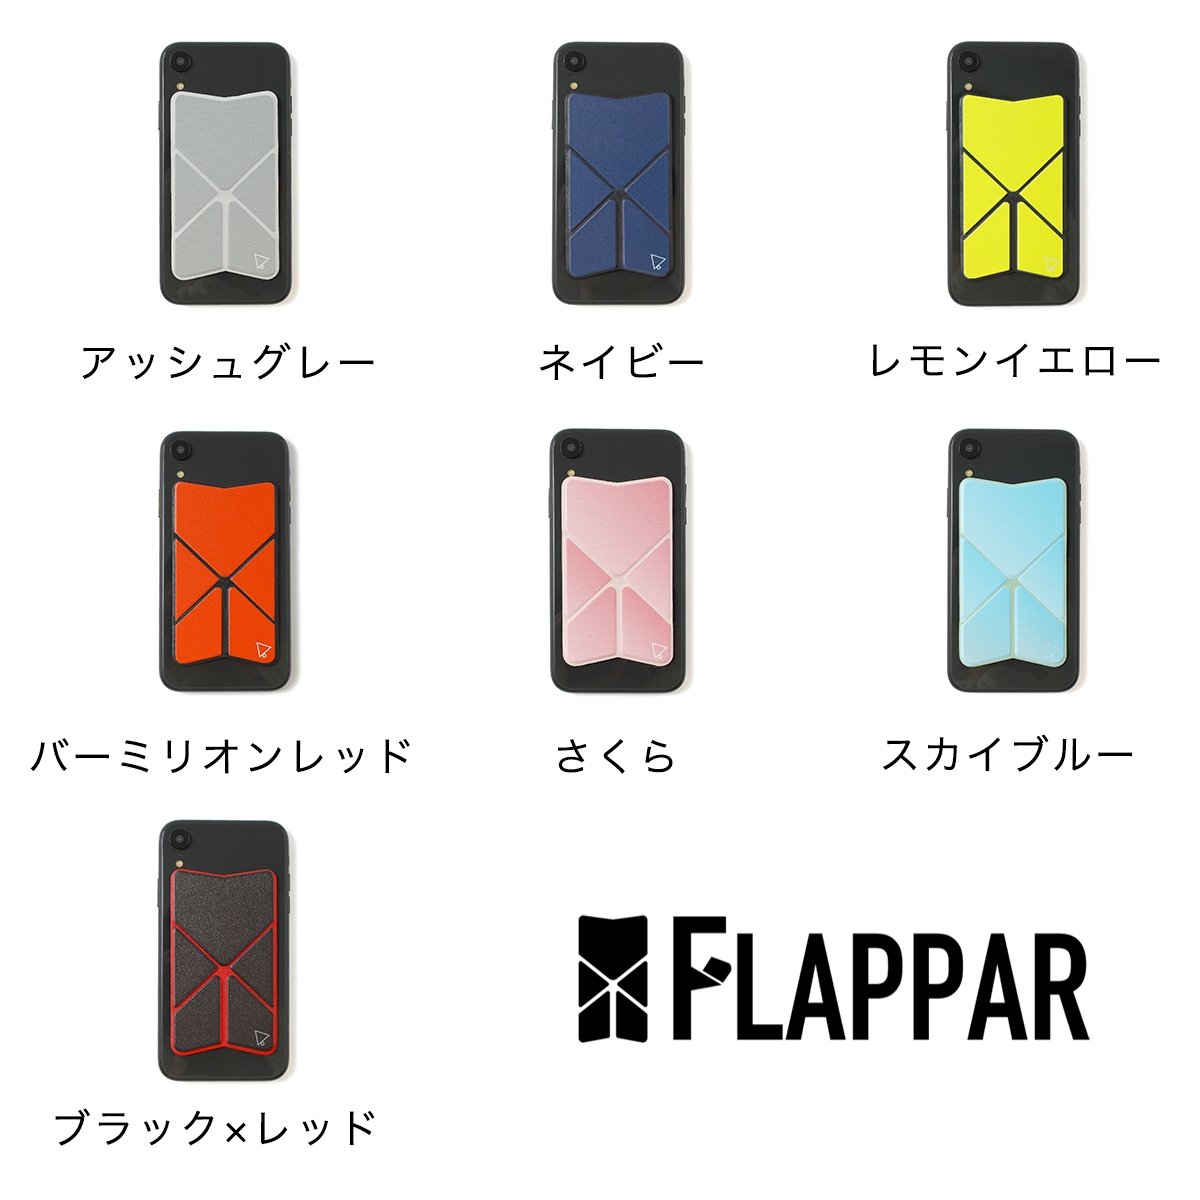 【選べる7色】HOLUDONA 薄いスマホスタンド 折りたたんで使える「FLAPPAR(フラッパー)」 - ユウボク東京公式ストア